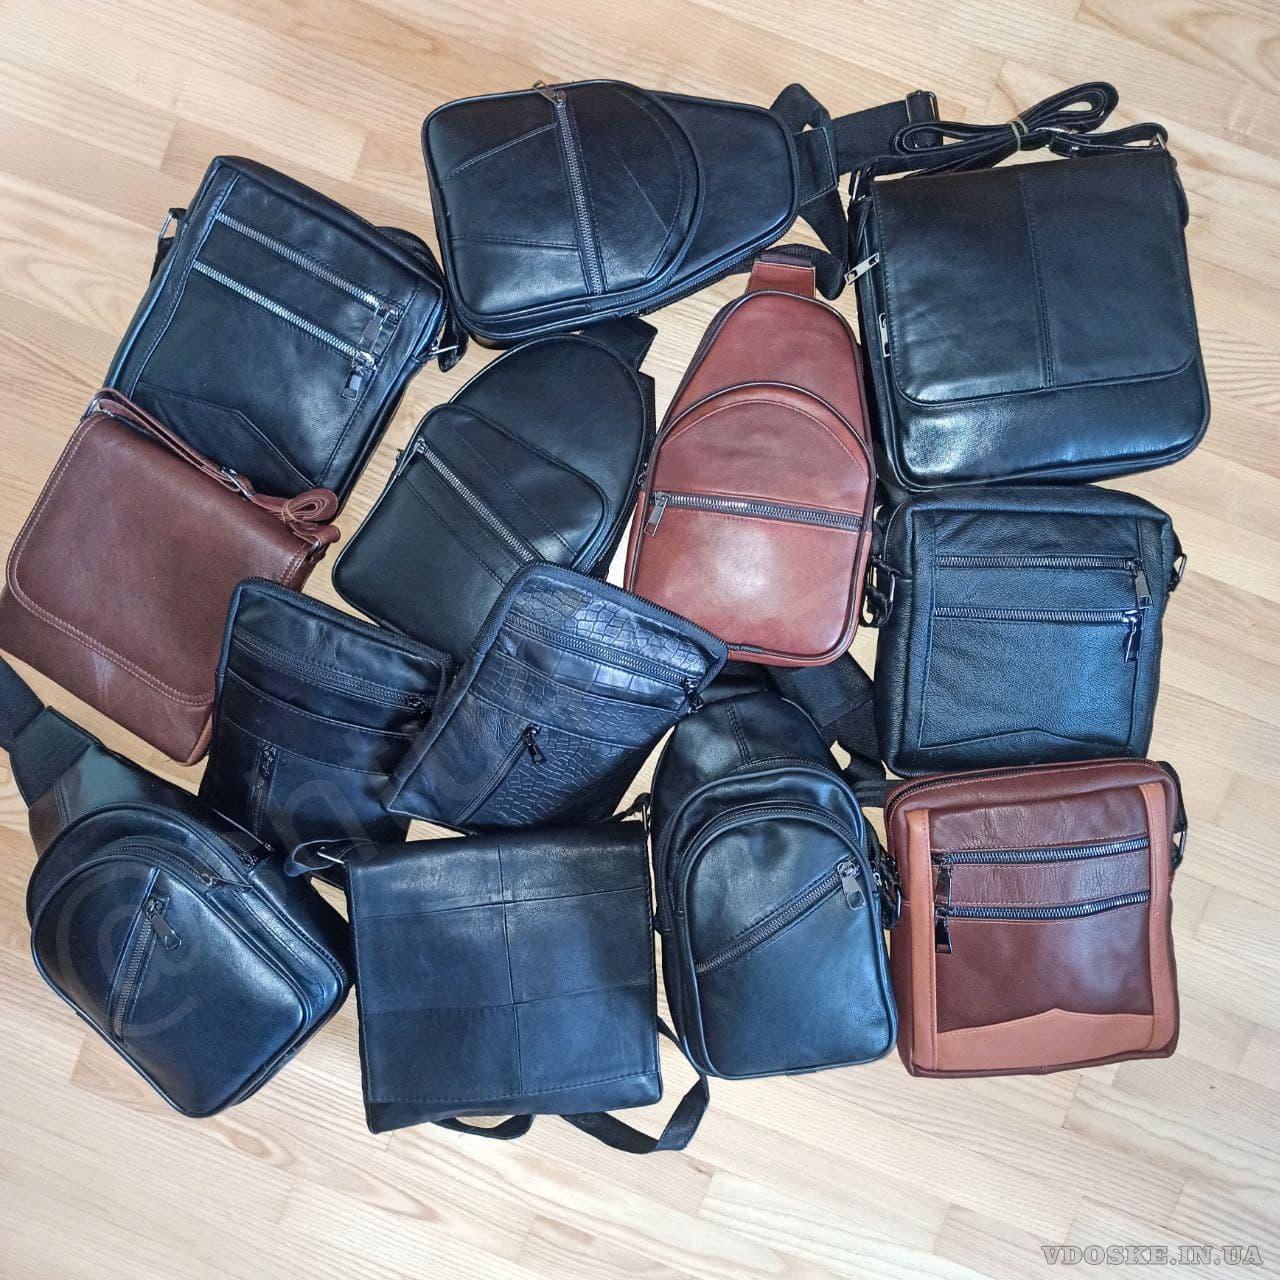 Кожаные сумки Турция по оптовой цене @Shtu4ka_ua (3)